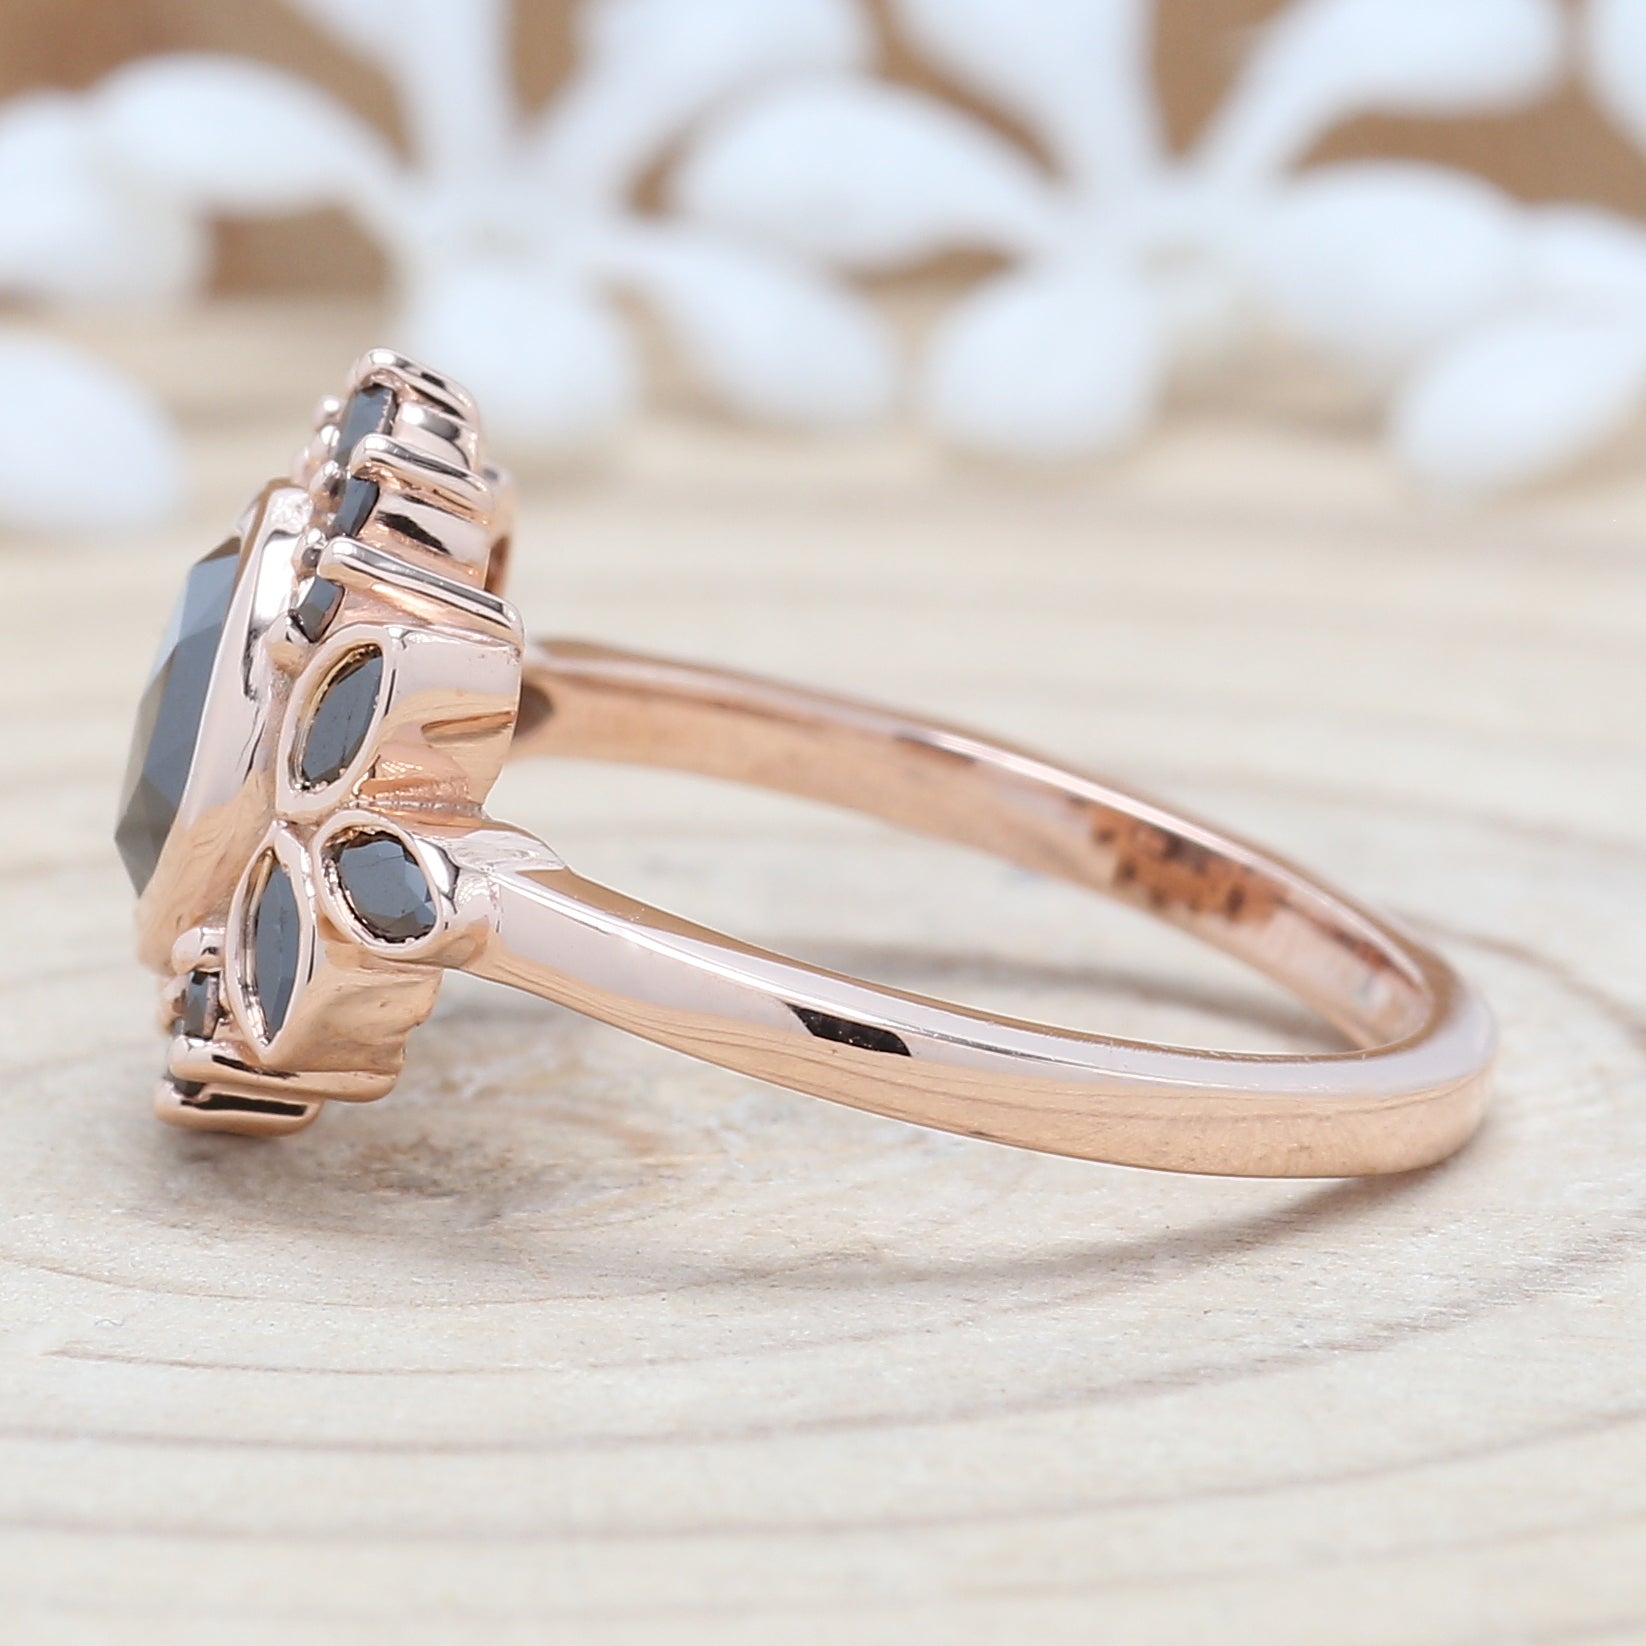 Black Round Rose Cut Diamond 14K Solid Rose White Yellow Gold Ring Engagement Wedding Gift Ring KDN9075